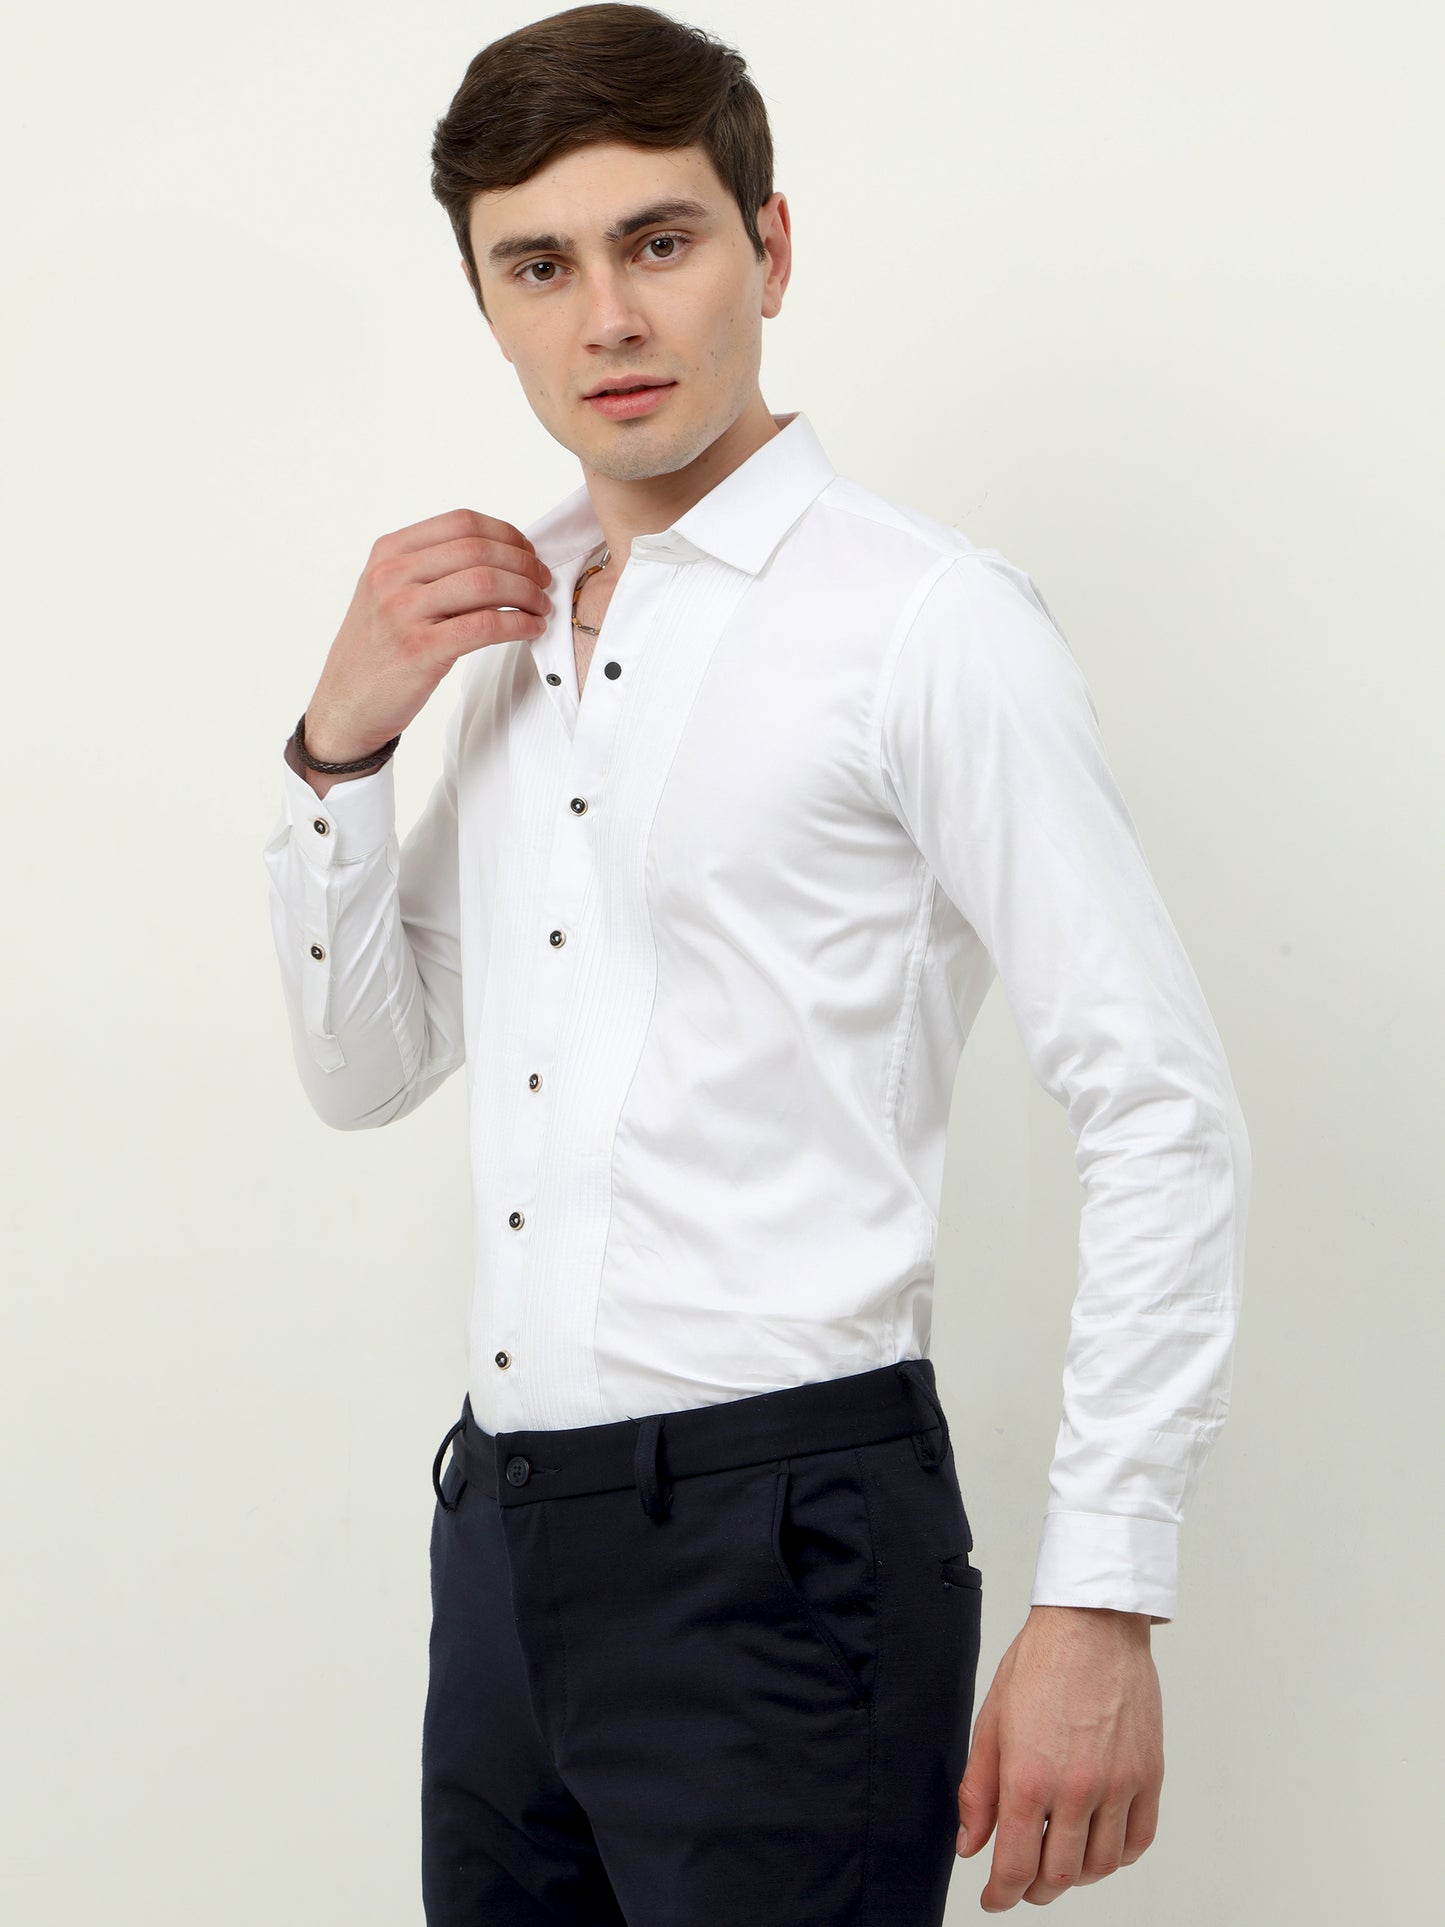 White premium tuxedo party shirt for men